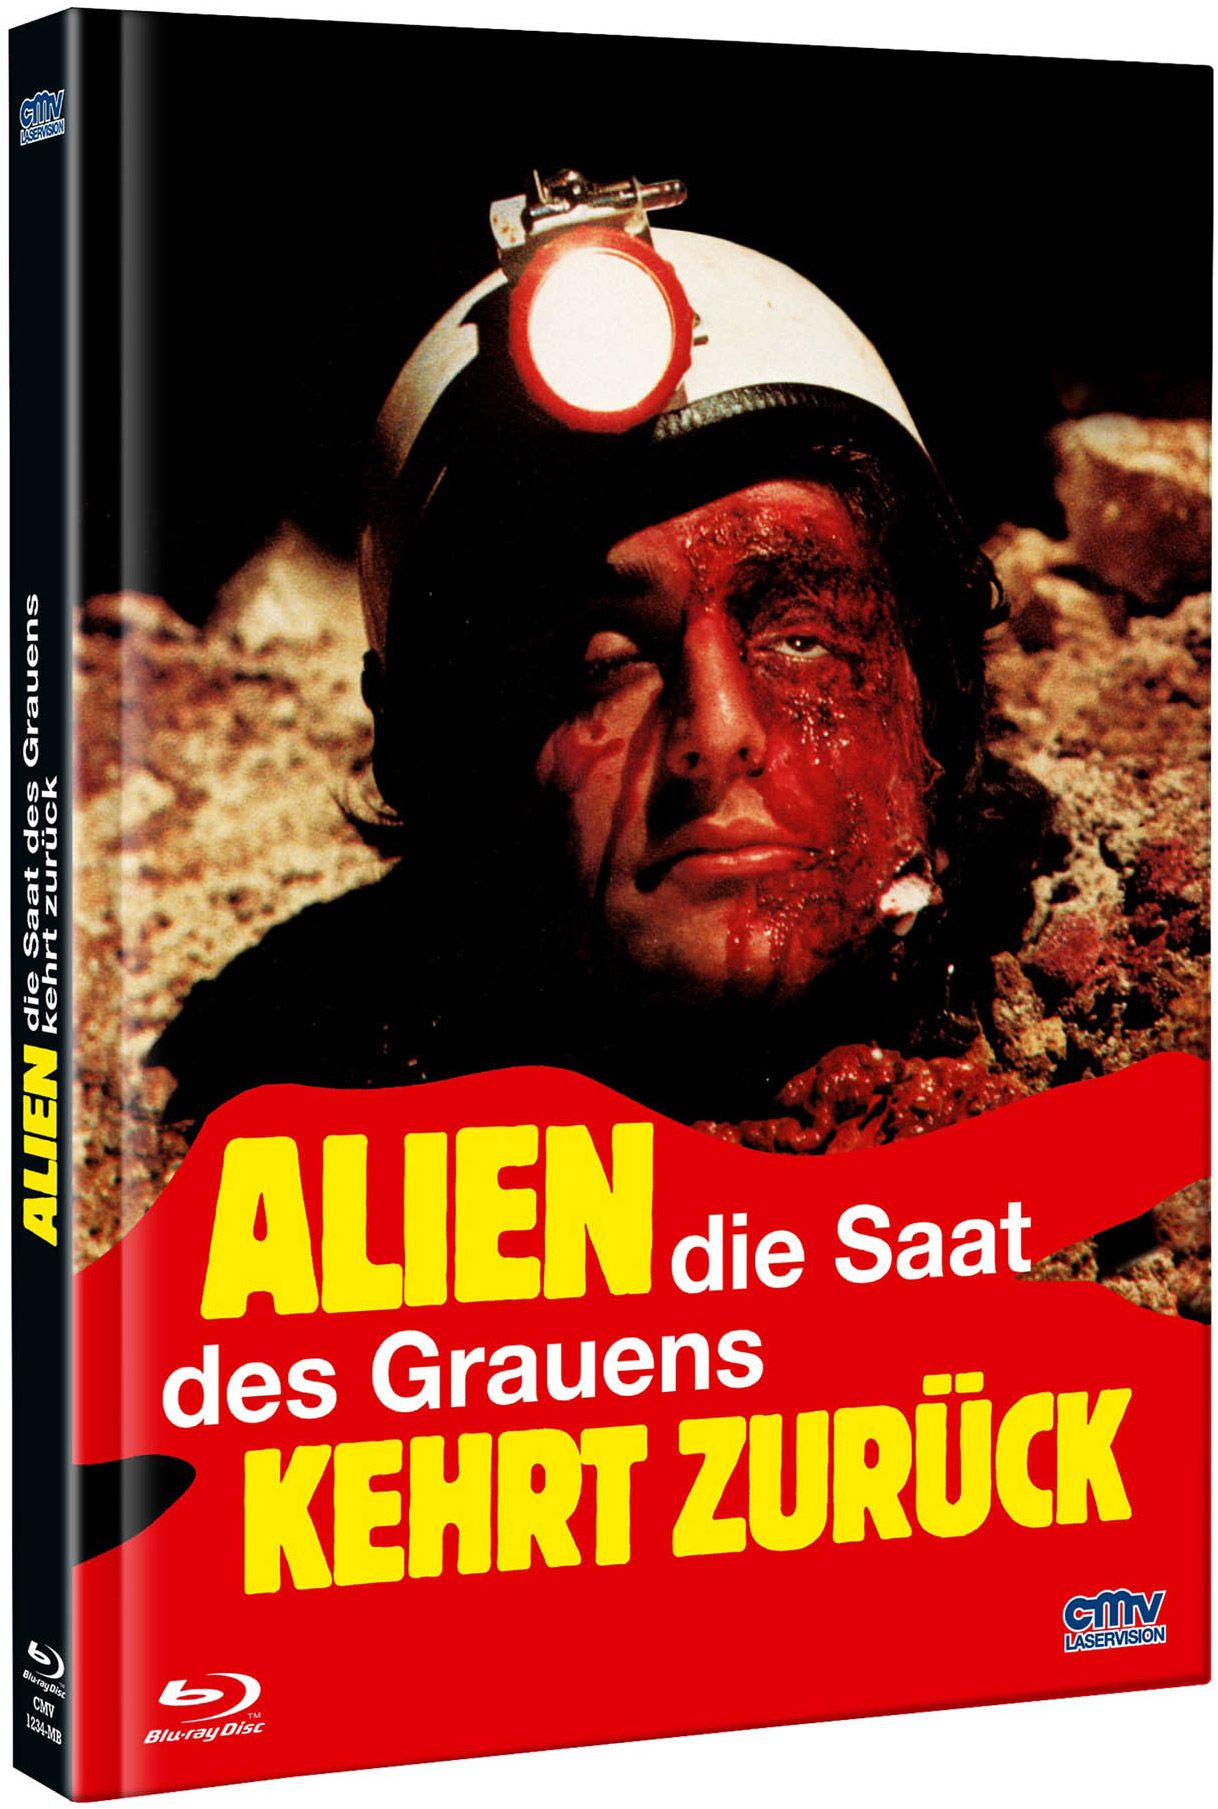 Alien - Die Saat des Grauens kehrt zurück (Lim. Uncut Mediabook - Cover B) (DVD + BLURAY)